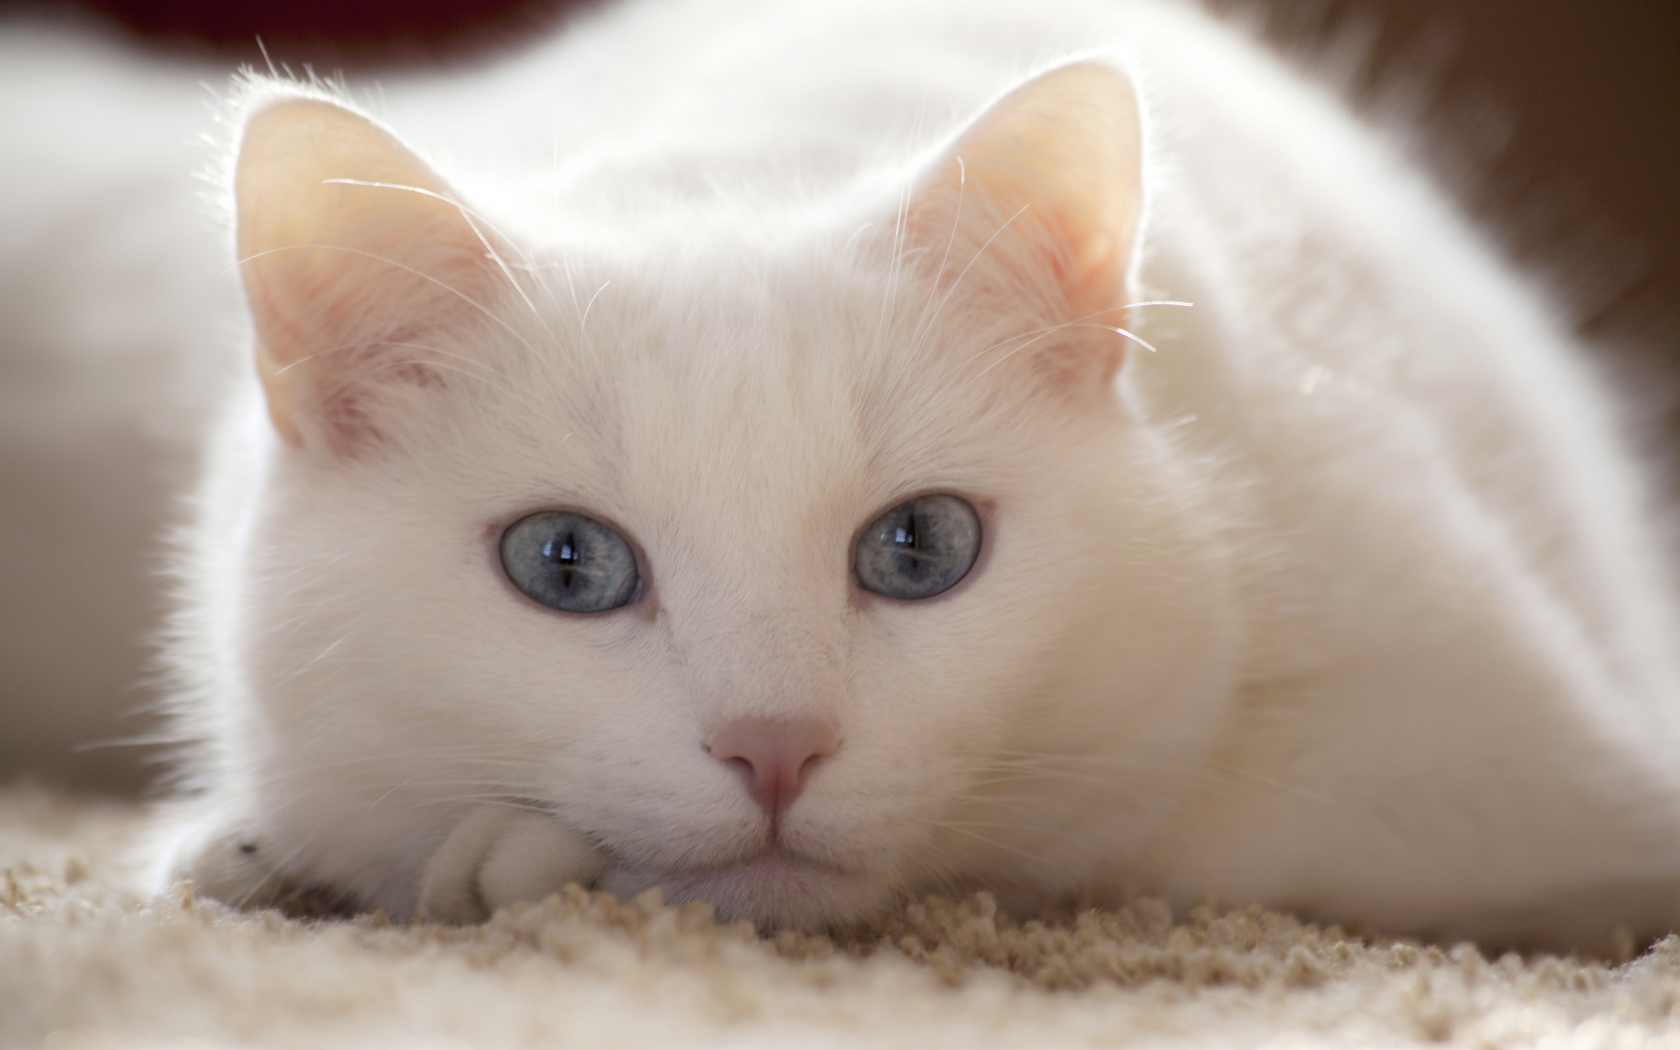  смотрит, лежит, кот, белый, взгляд